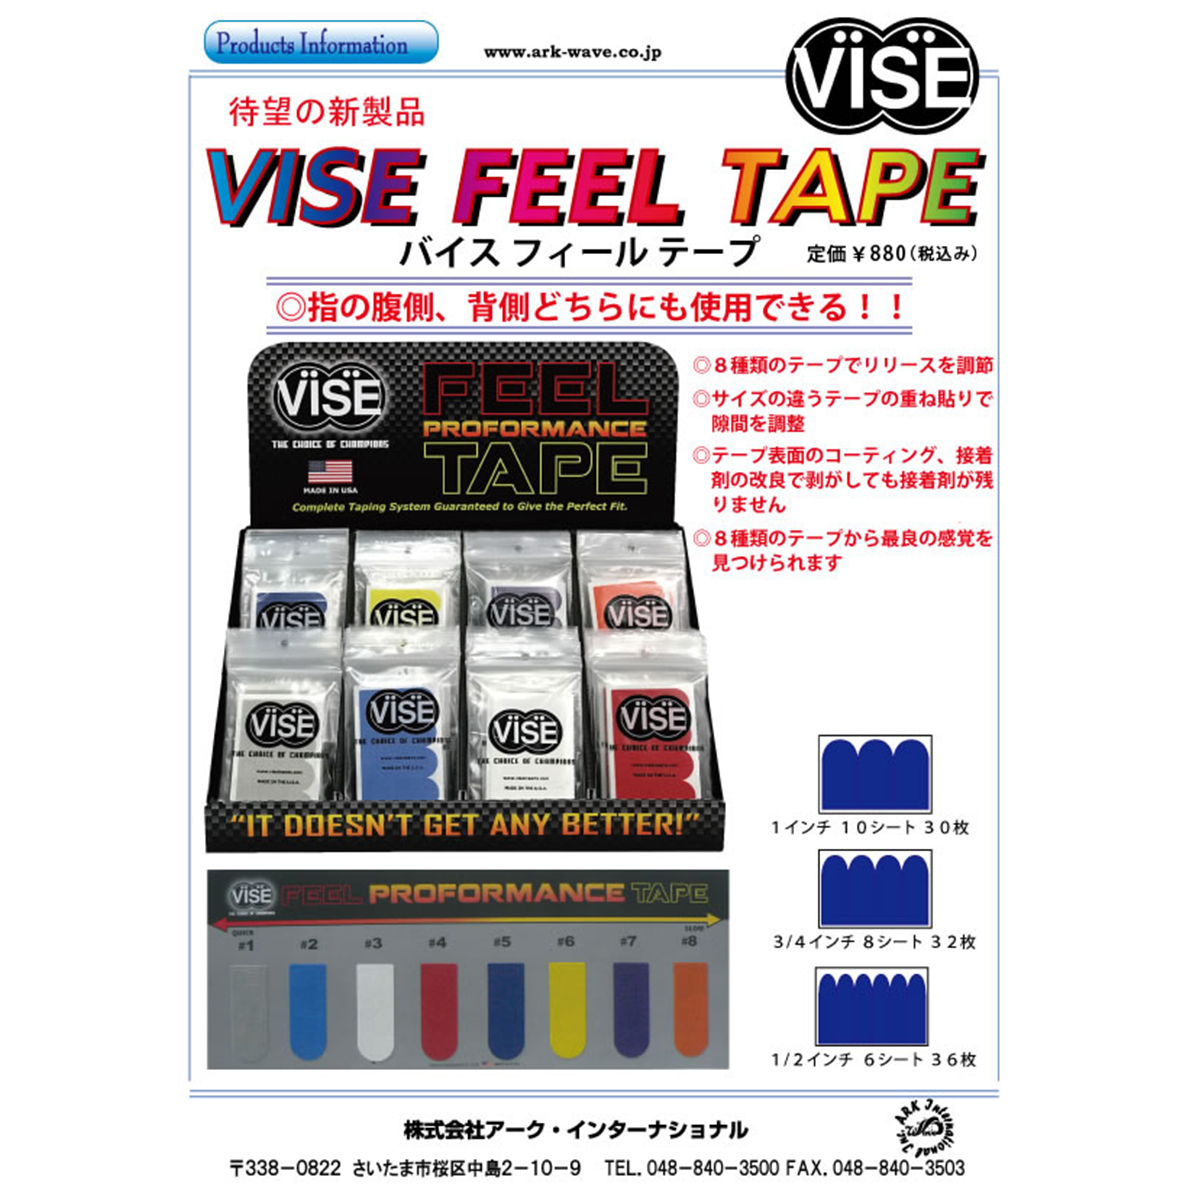 【12袋セット】VISE フィールテープ#4(赤色) - ウインドウを閉じる